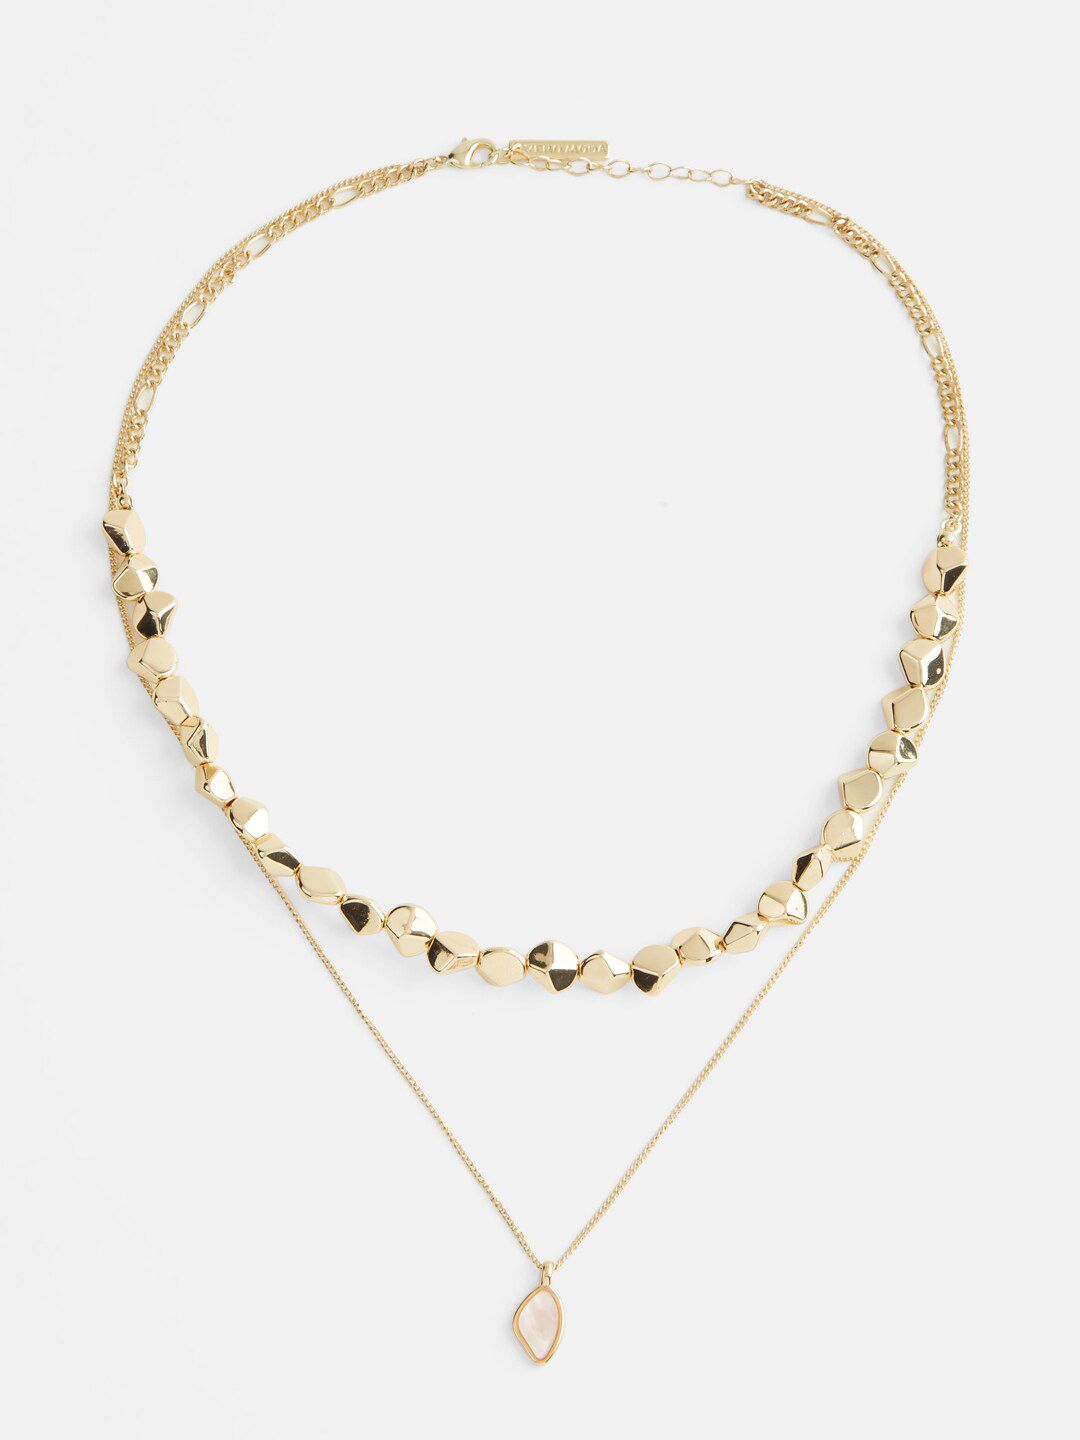 Vero Moda Gold-Toned & White Necklace Price in India